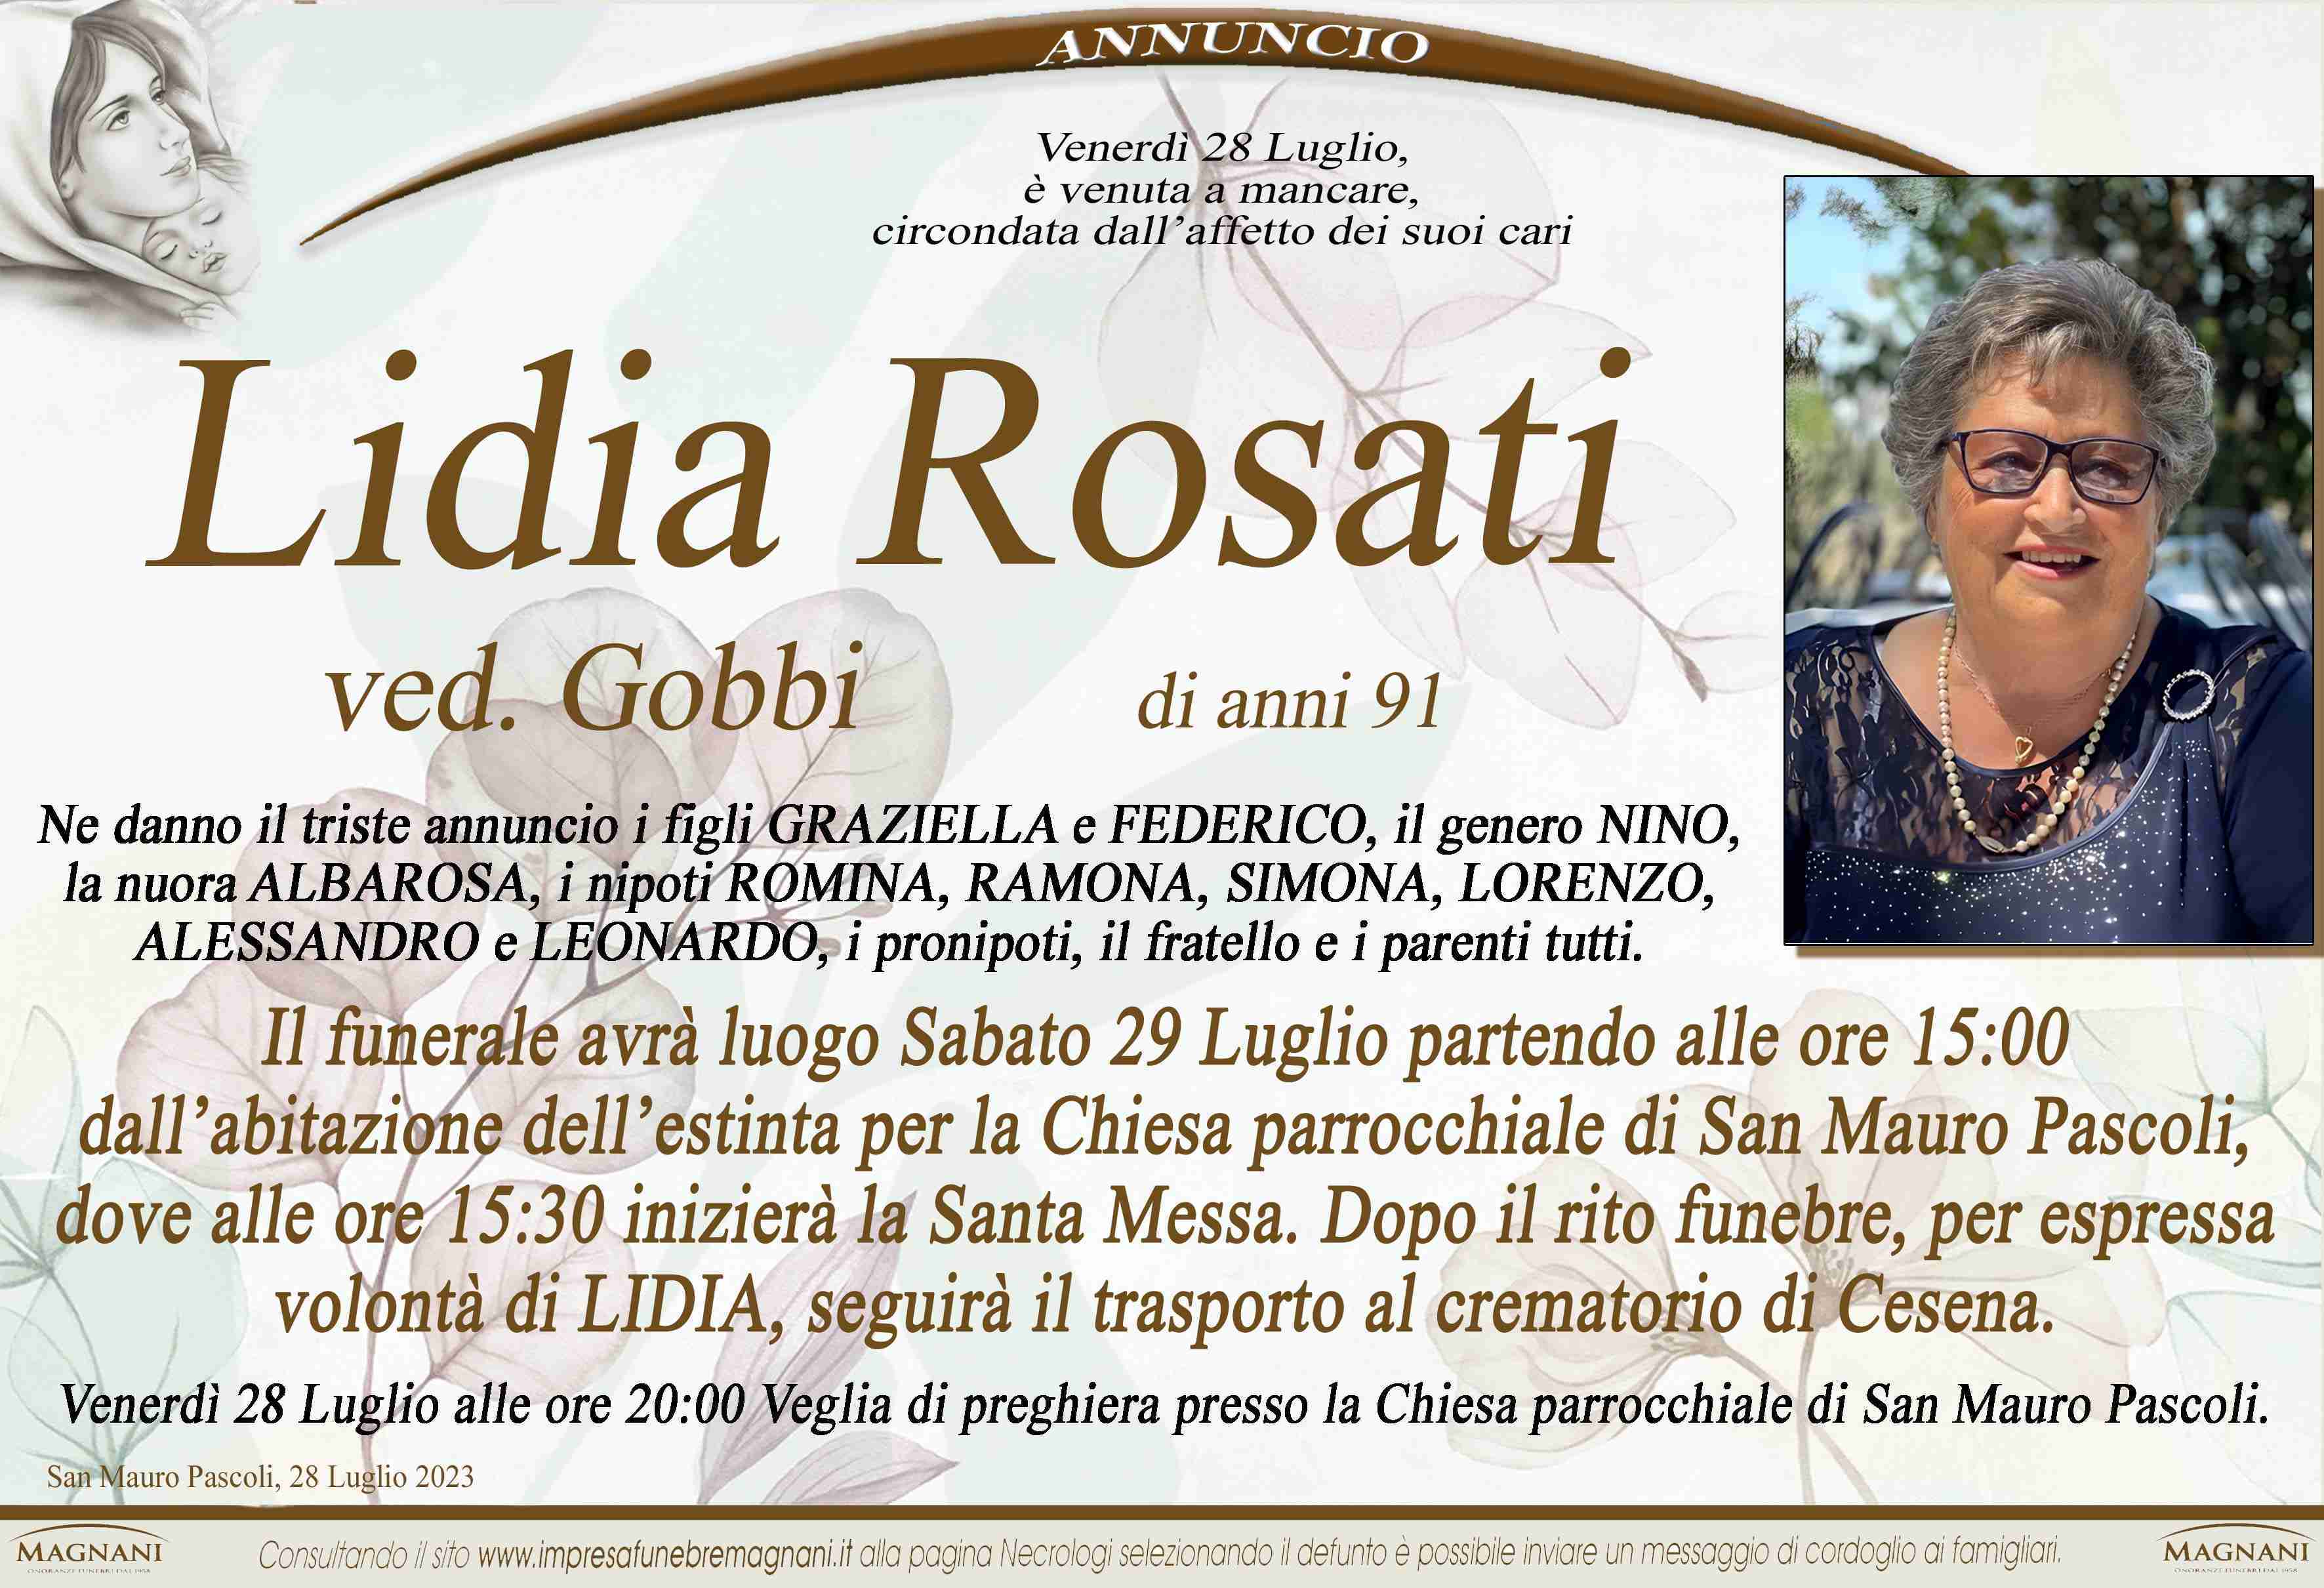 Lidia Rosati